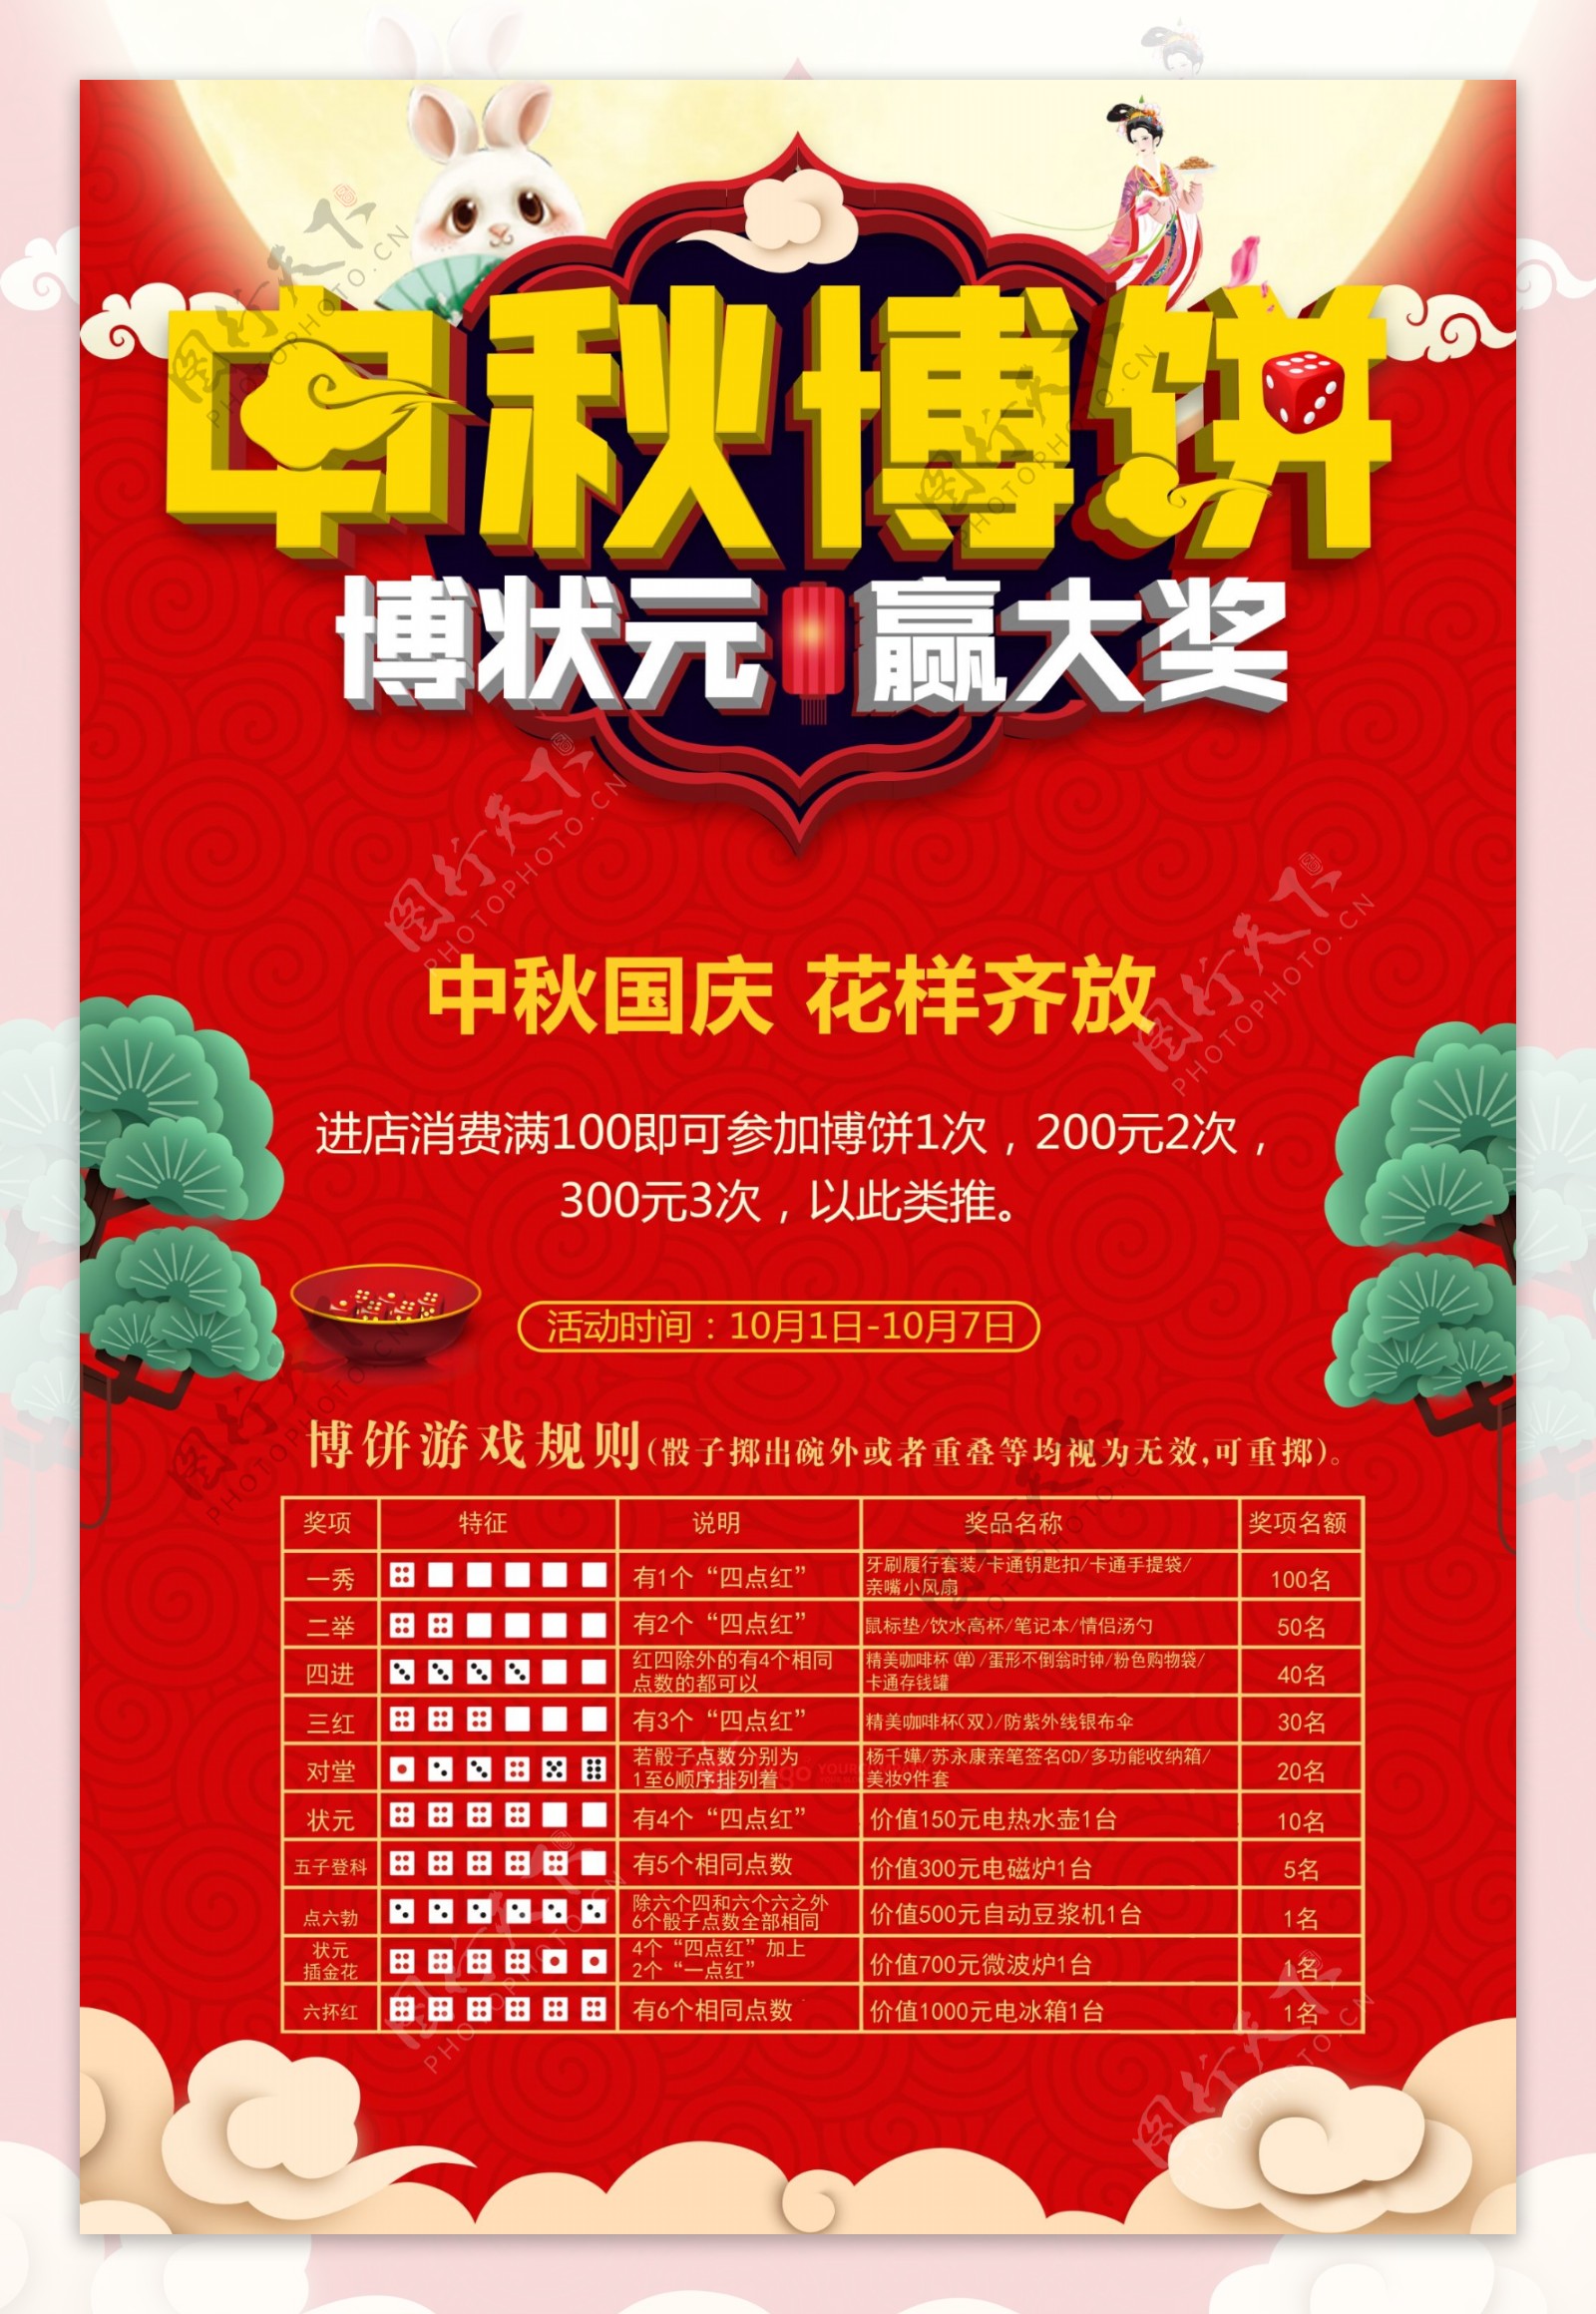 中秋国庆中秋博饼活动宣传海报